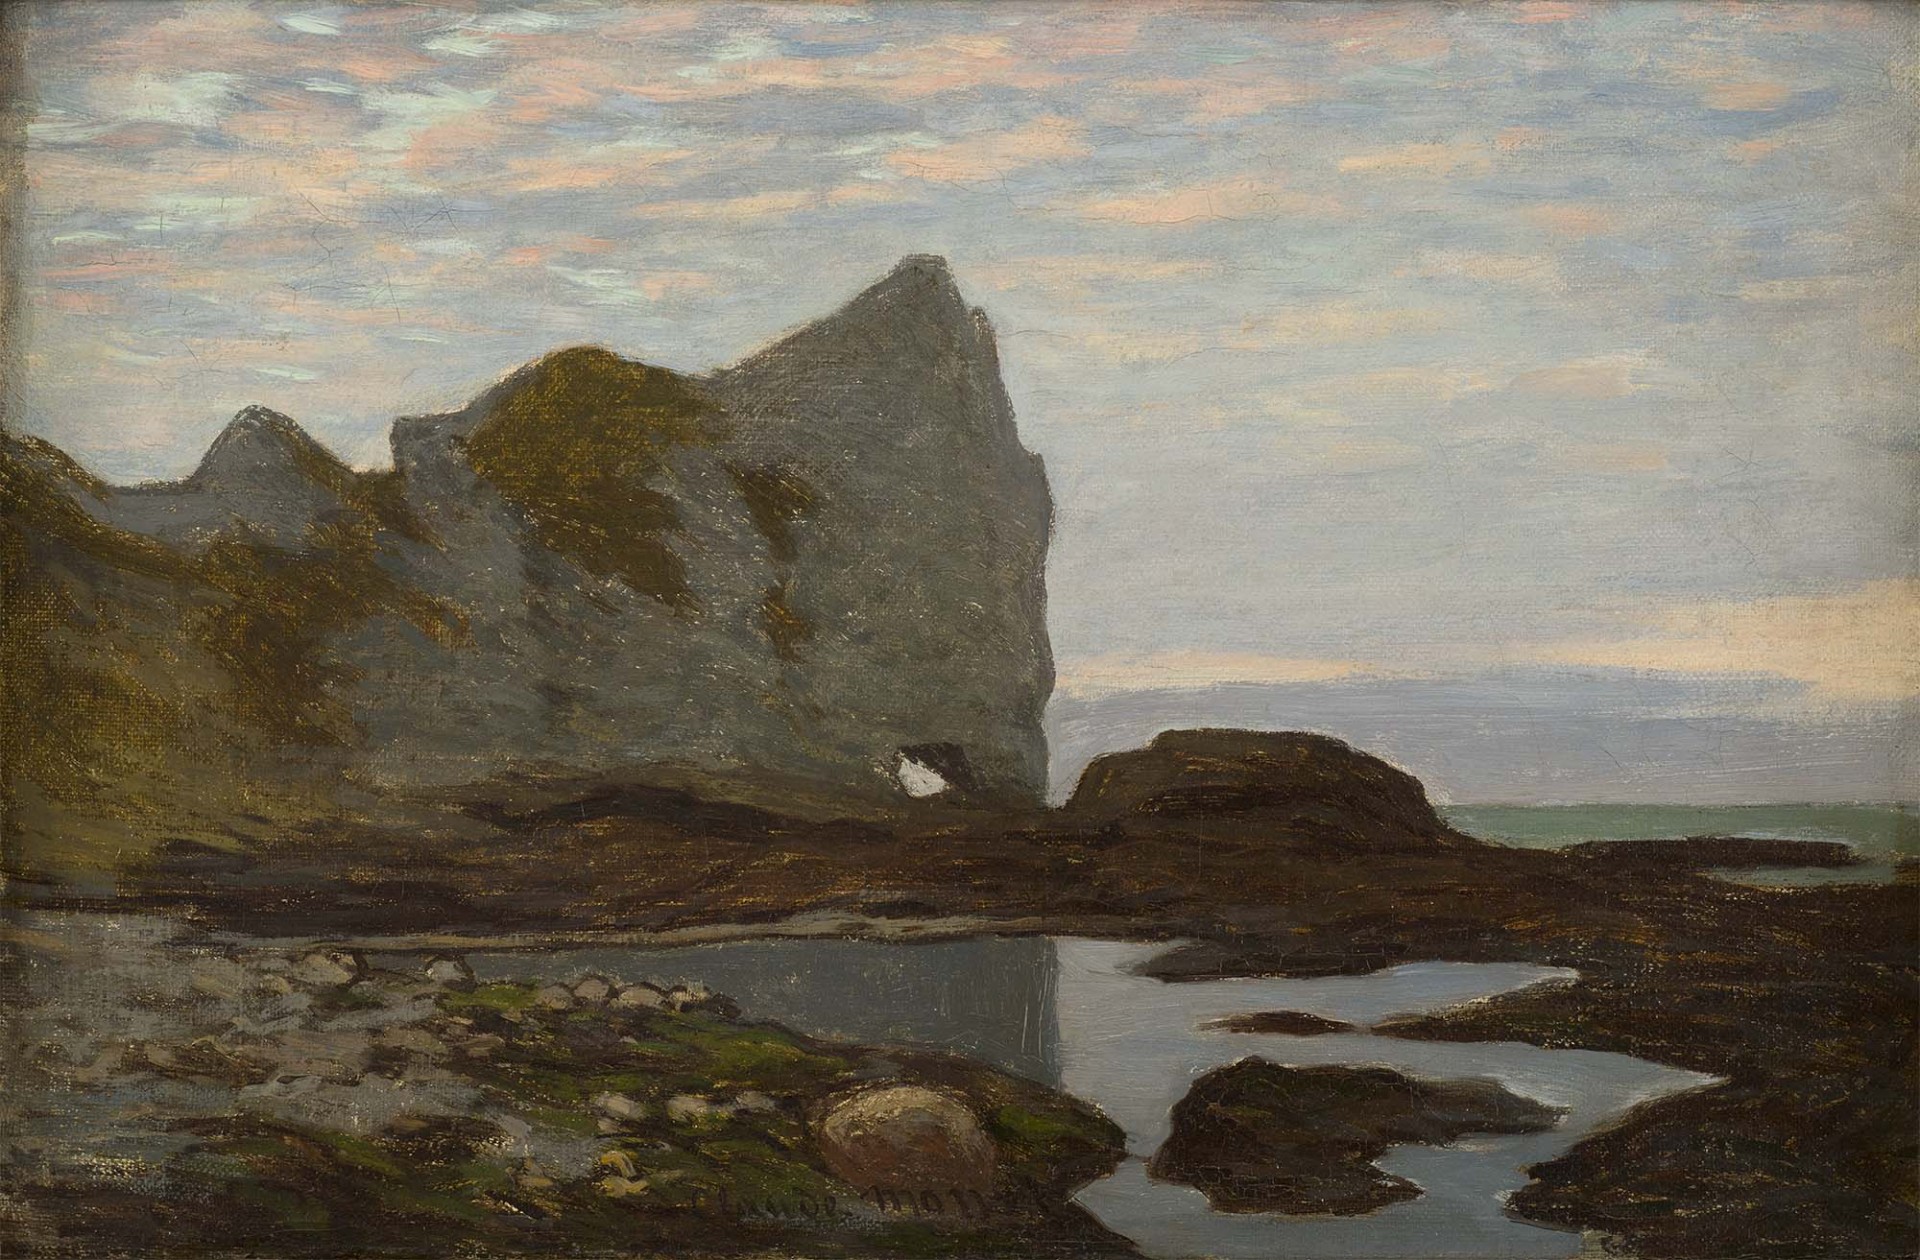 Claude Monet, Étretat, 1864